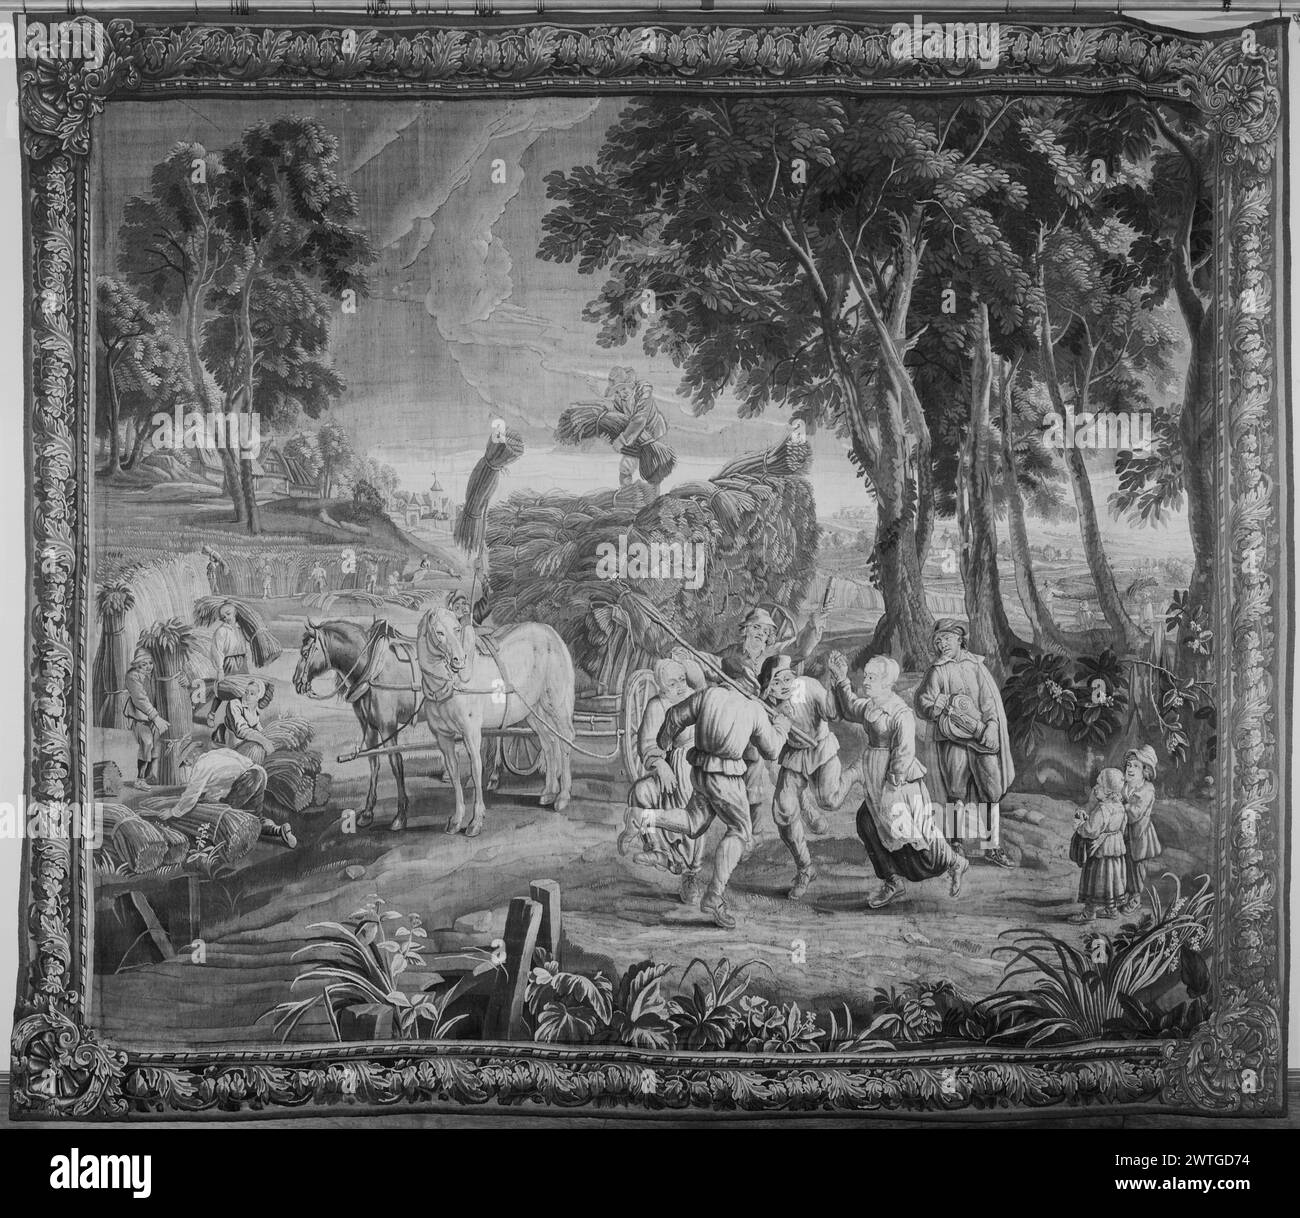 Danse. Teniers, David II (Flamand, 1610-1690) (dessiné après) [peintre] Leyniers, Daniel II (Flamand, 1669-1728) (atelier, attr.) [tisserand] Leyniers, Urbanus (Flamand, 1674-1747) (atelier, attr.) [tisserand] c. 1710-1730 dimensions de la tapisserie : H 9'8' x l 11'2' matériaux/techniques de tapisserie : inconnue culture : Centre de tissage flamand : Bruxelles histoire de propriété : Français et Co. reçu de MRS Stanley Mortimer, 1/1948 ; retourné, 2/4/1948. Vendu aux galeries Parke-Bernet (vente MRS Stanley Mortimer), 19/03/1948, lot 169. États-Unis, New York, New York, Sotheby's, Mar. 25, 1972, lot 217. Dans Hayfiel Banque D'Images